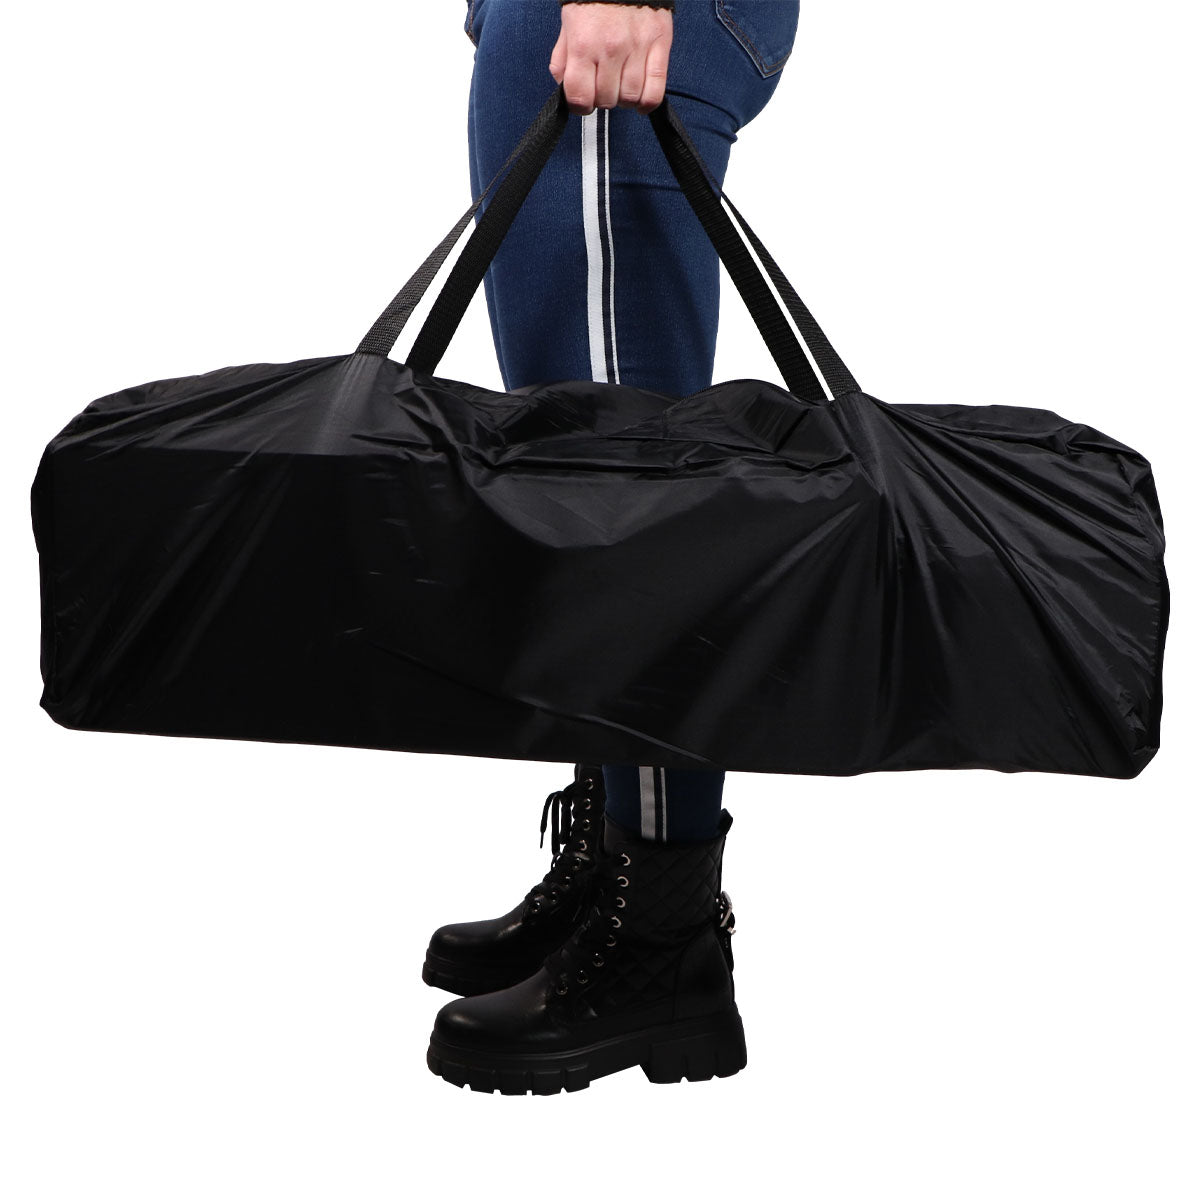 Het Ding reisbed in de prachtige kleur Stripe zwart biedt een comfortabele en gemakkelijke oplossing voor dutjes onderweg. Dit campingbedje is ontworpen volgens het 'paraplu principe'. VanZus